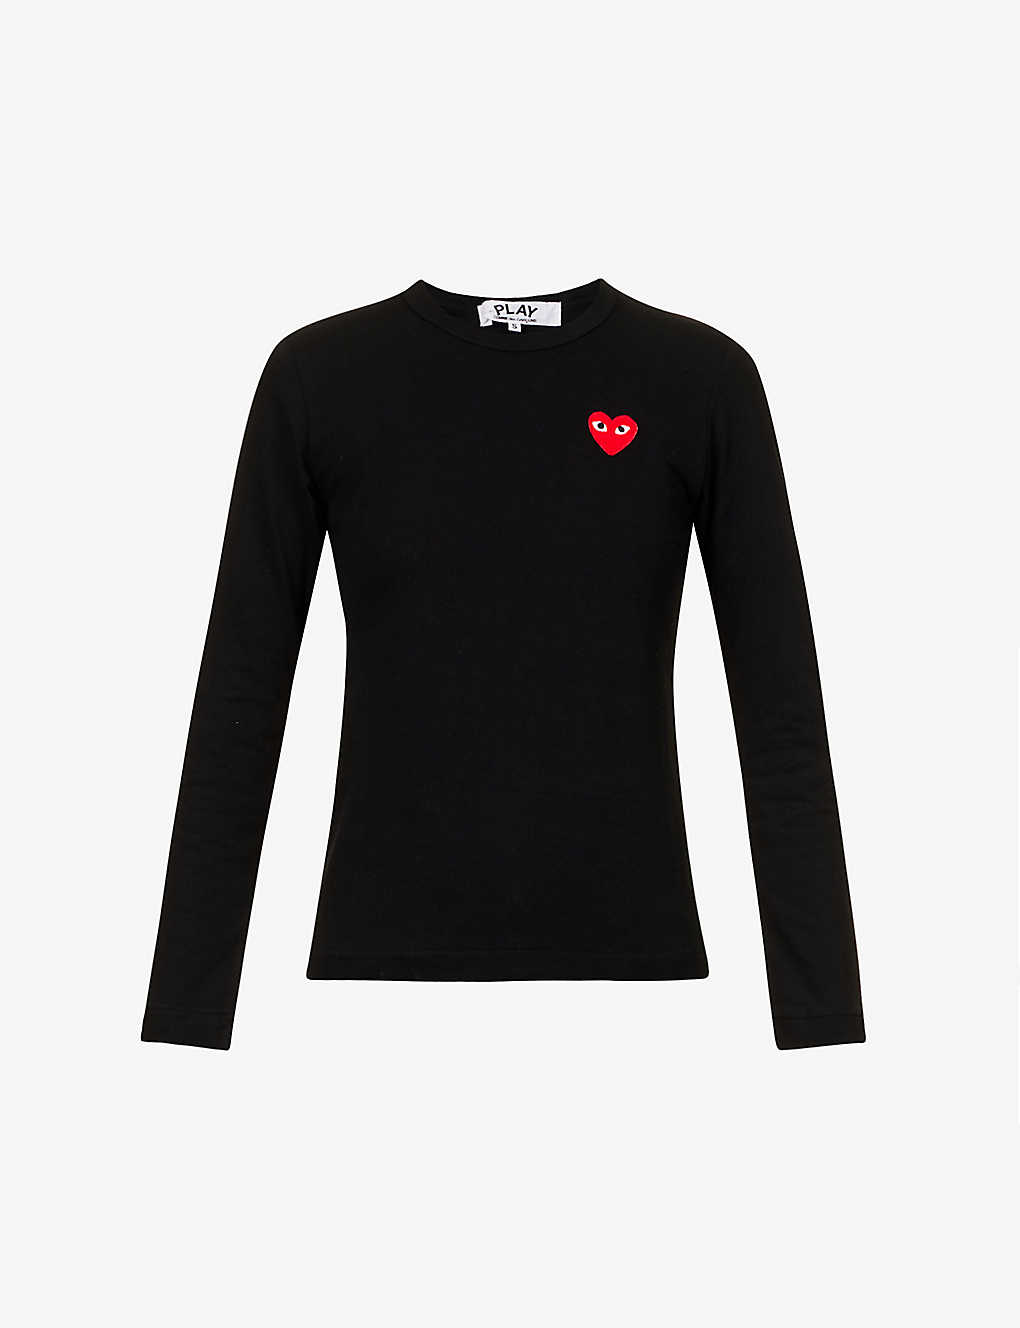 Comme Des Garçons Play Comme Des Garcons Play Women's Black Heart-appliquéd Cotton-jersey Top